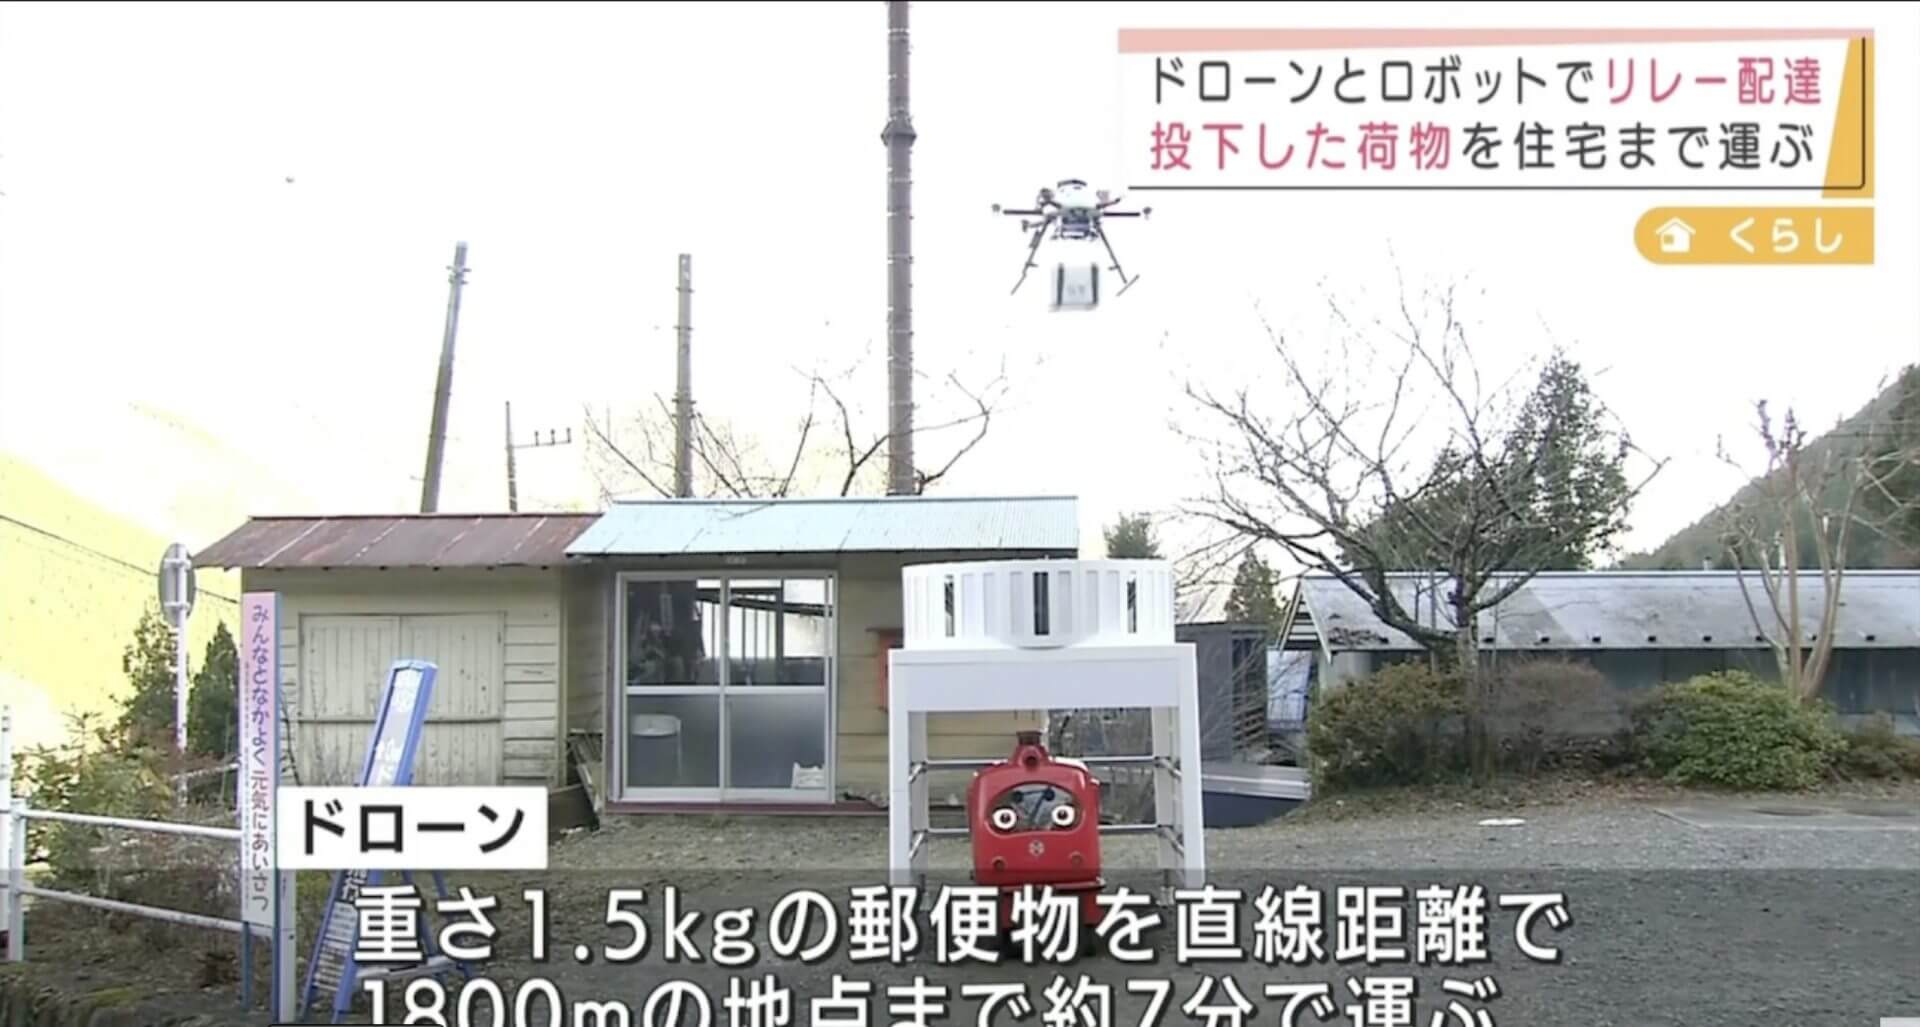 Dupla de drones realiza experimento de entrega conjunta em Tóquio